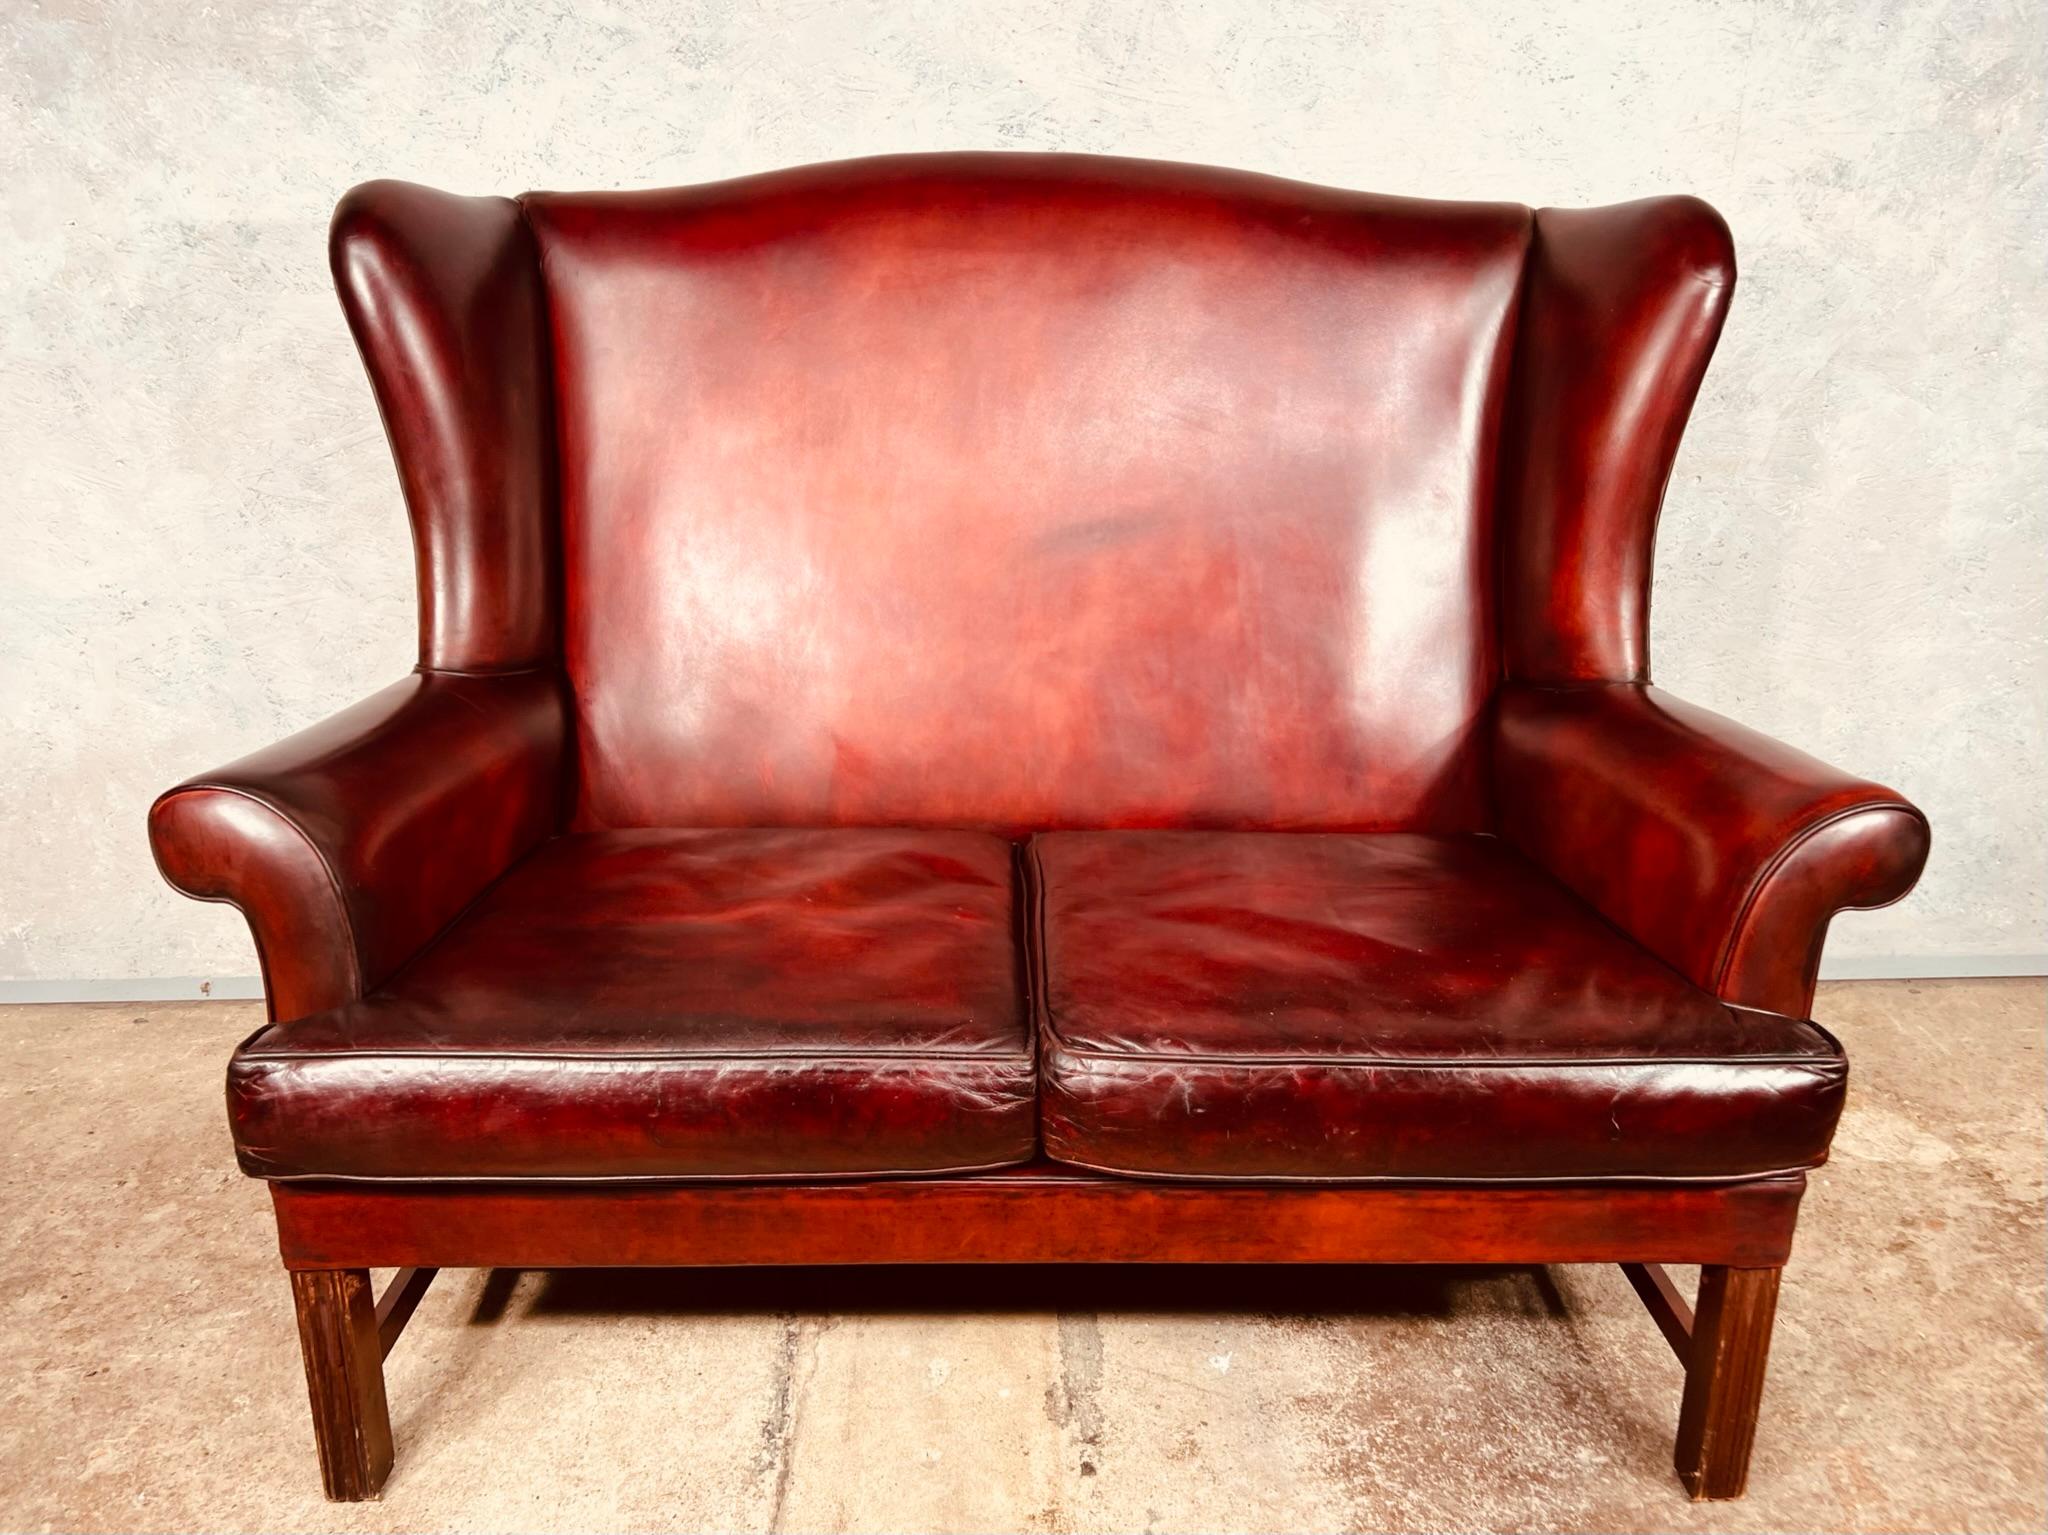 Eine große Qualität Mitte des Jahrhunderts Leder georgianischen Stil Sofa, schöne ordentliche Größe, es steht schön auf solide geriffelt Mahagoni Beine.

In ausgezeichnetem Zustand, ist das Leder eine schöne Hand gefärbt Deep Red mit einer schönen